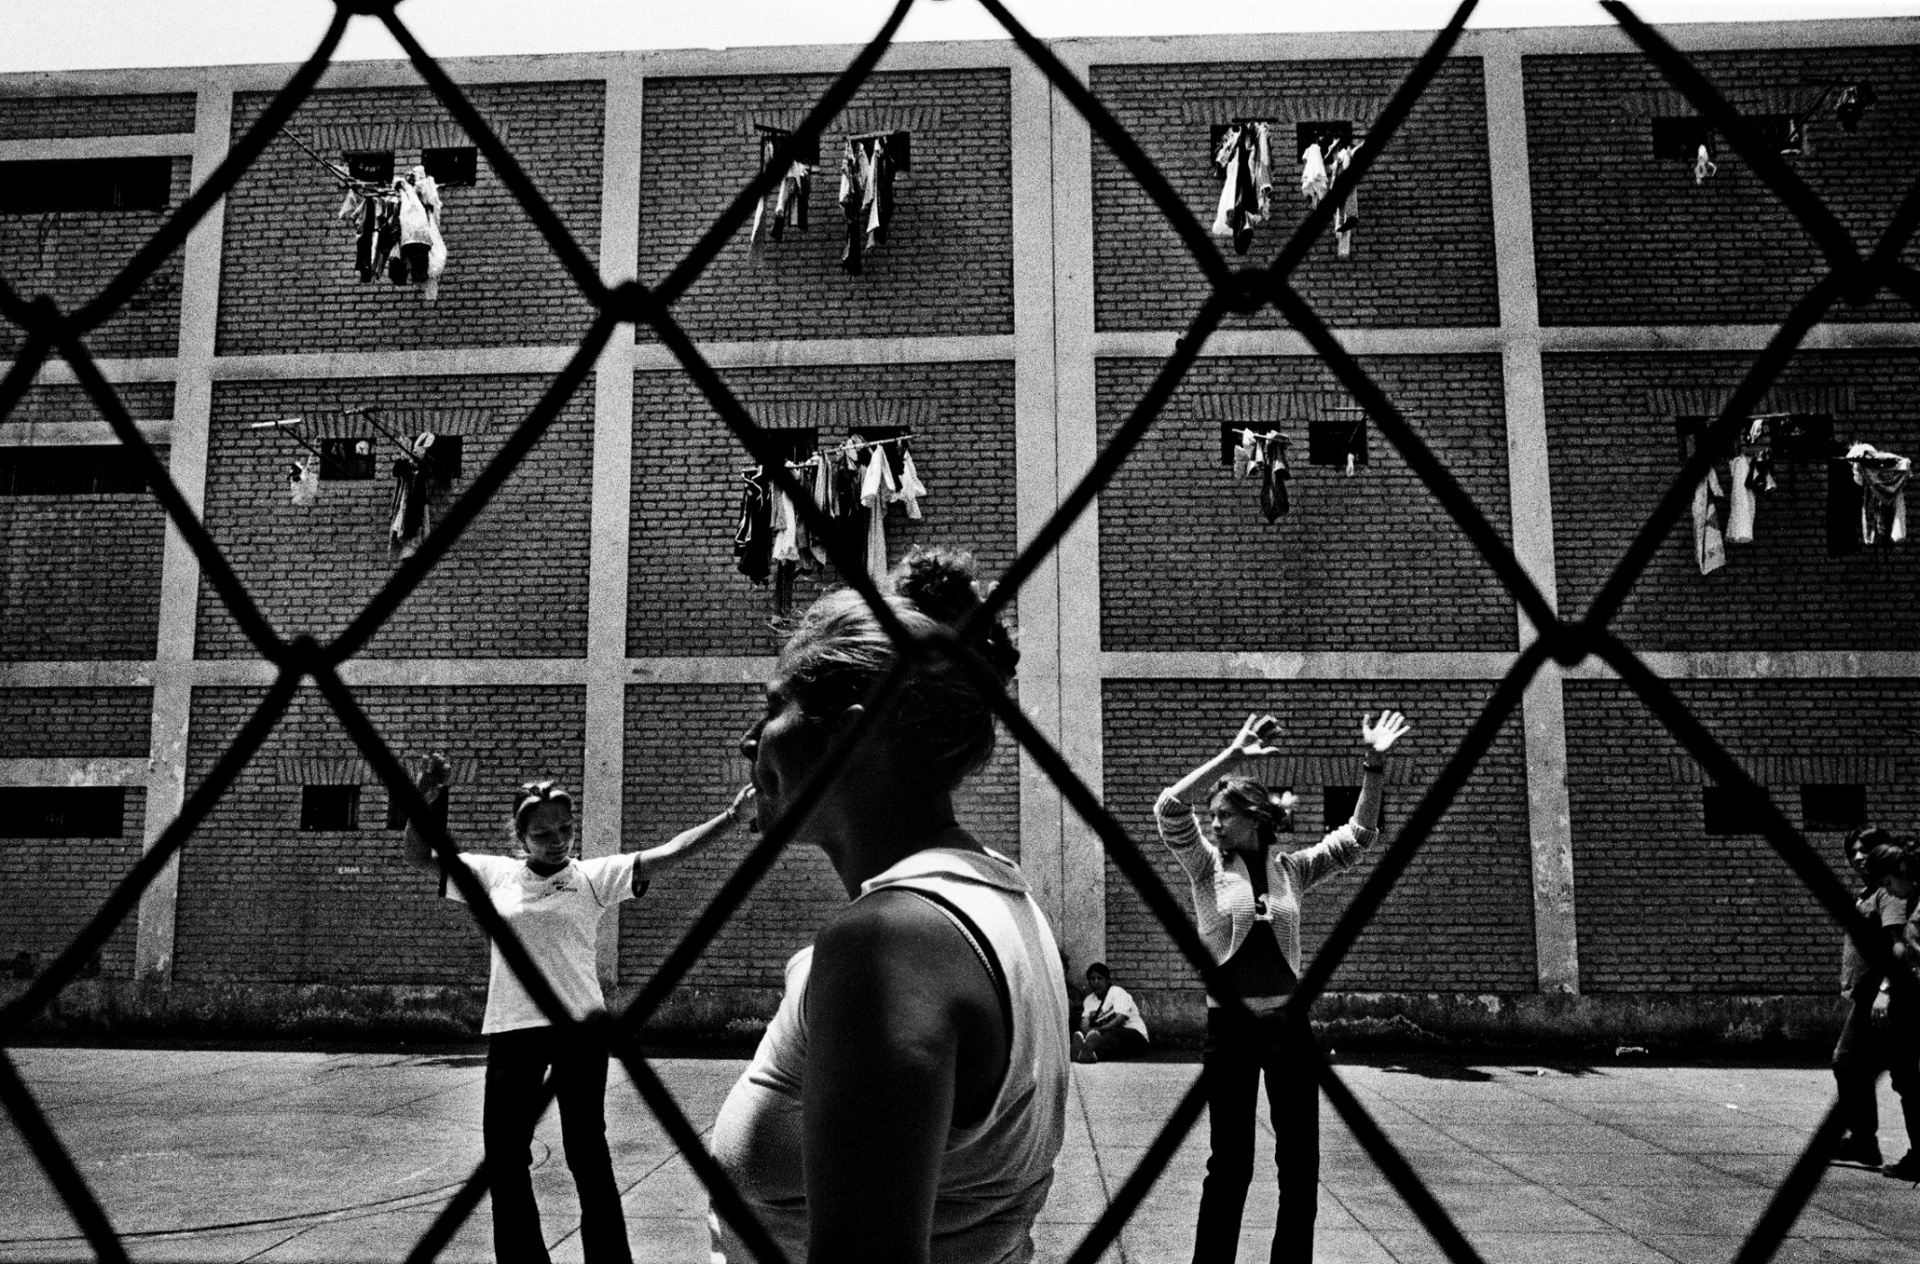 Чоррильос, женская тюрьма, Лима, Перу, 2007 Во время своего путешествия, Валерио Биспури видел мужчин, которые только что бросались друг на друга с ножами, и позже играли в футбол друг с другом, и женщин-заключенных, танцующих танго. На данной фотографии мы видим, как две молодые женщины танцуют, возможно разучивая какие-то движения из степа. 